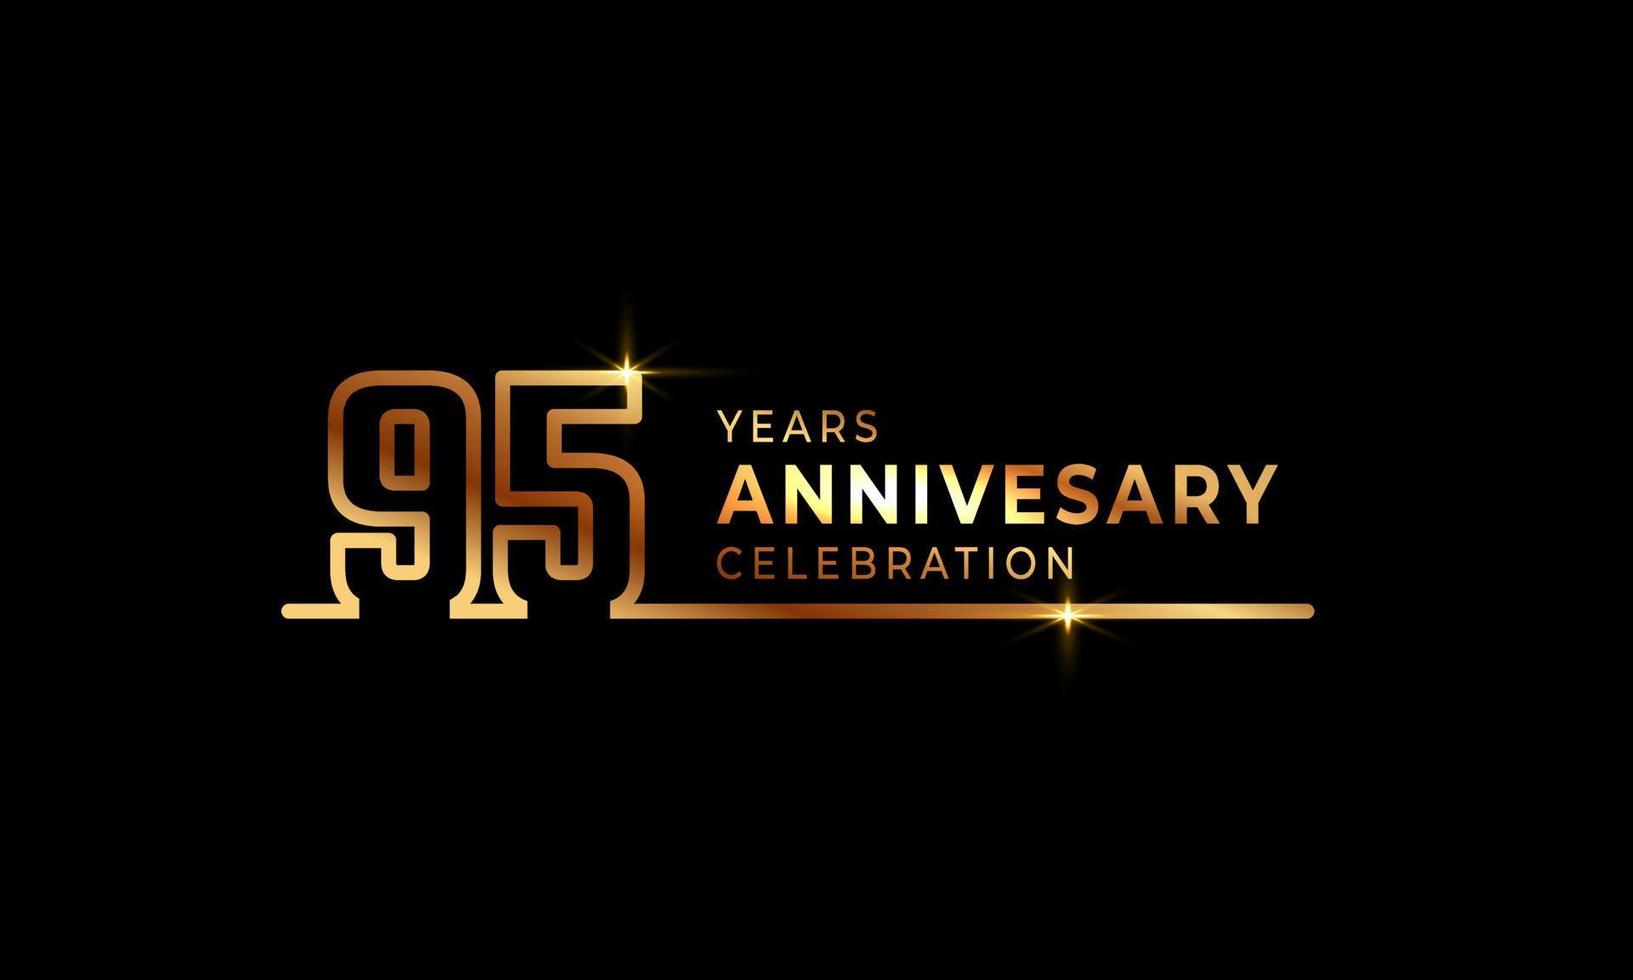 Logotyp zum 95-jährigen Jubiläum mit goldfarbenen Schriftnummern aus einer verbundenen Linie für Feierlichkeiten, Hochzeiten, Grußkarten und Einladungen einzeln auf dunklem Hintergrund vektor